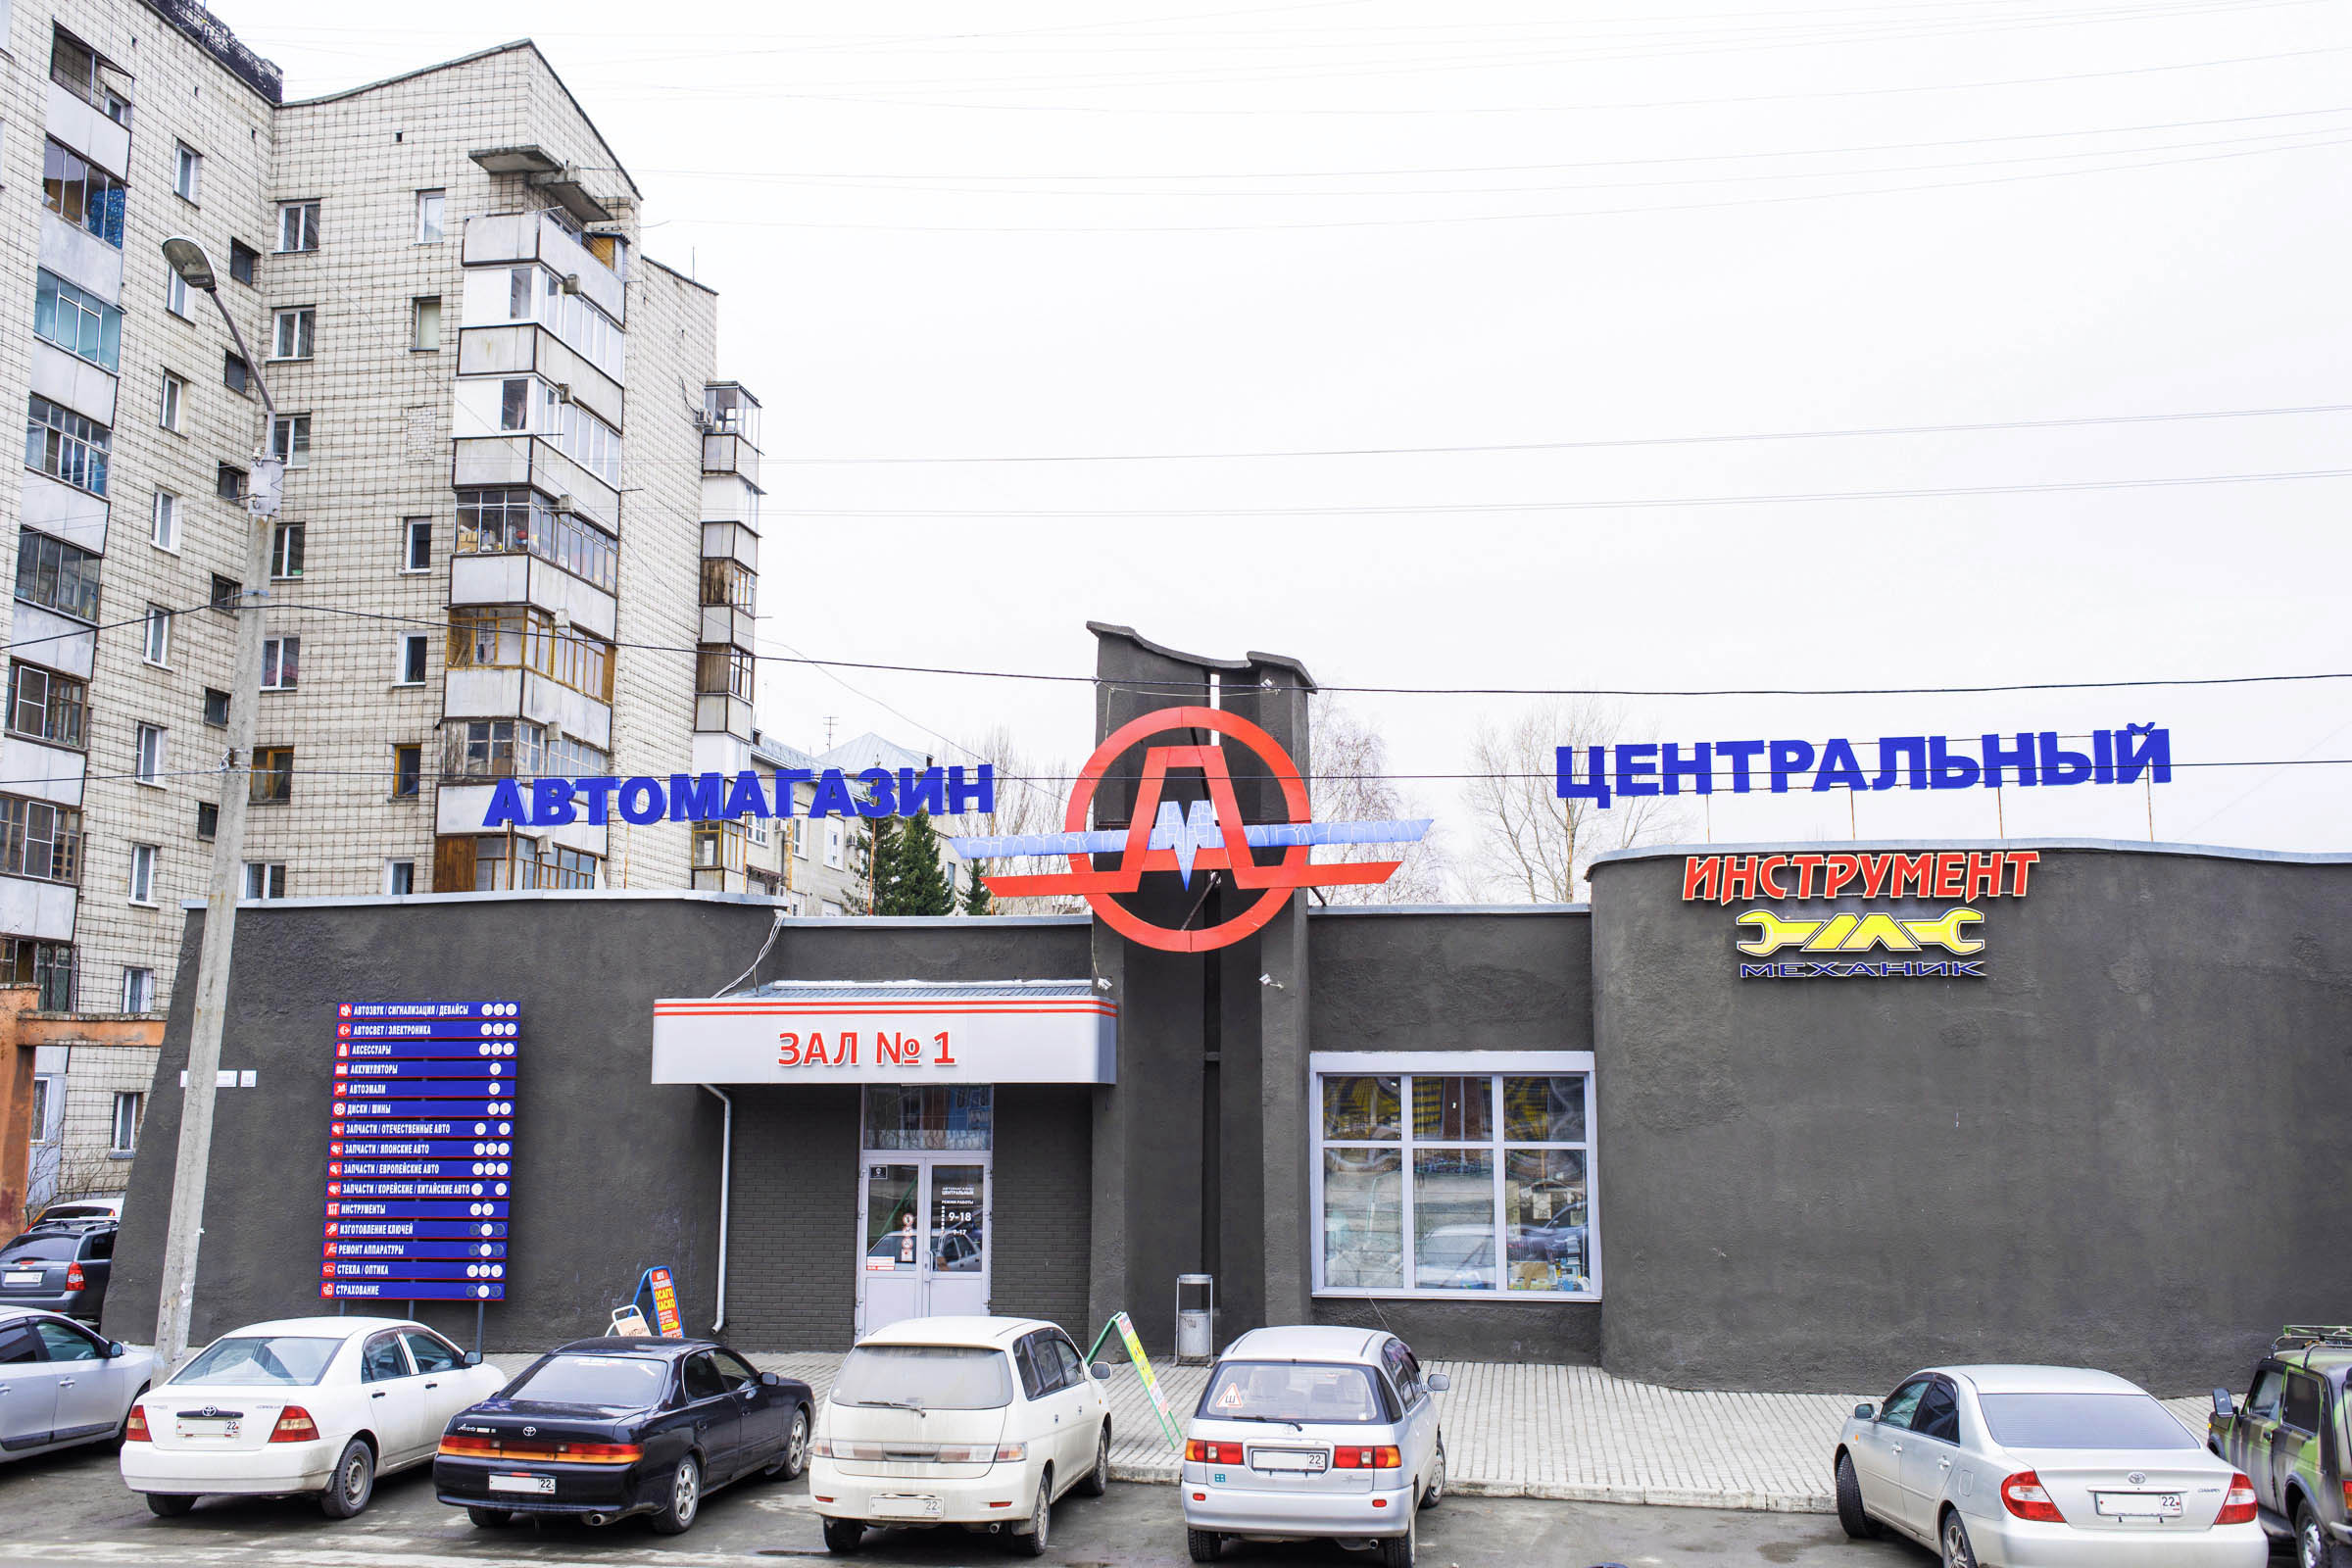 Магазин "Эскор Авто" в Барнауле на Покровской ЗАЛ №1